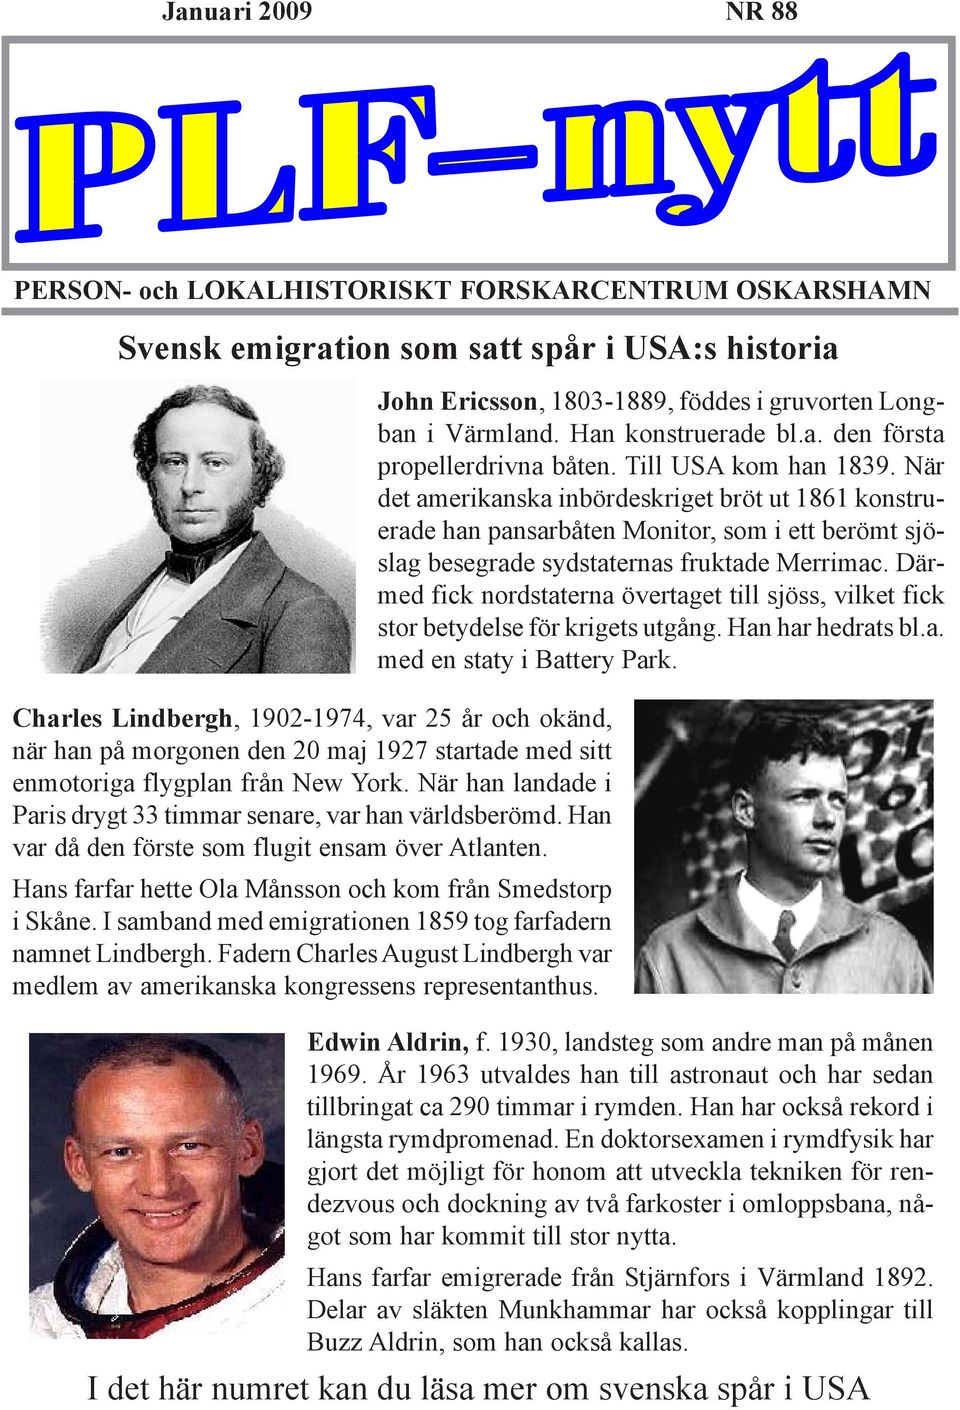 Hans farfar hette Ola Månsson och kom från Smedstorp i Skåne. I samband med emigrationen 1859 tog farfadern namnet Lindbergh.